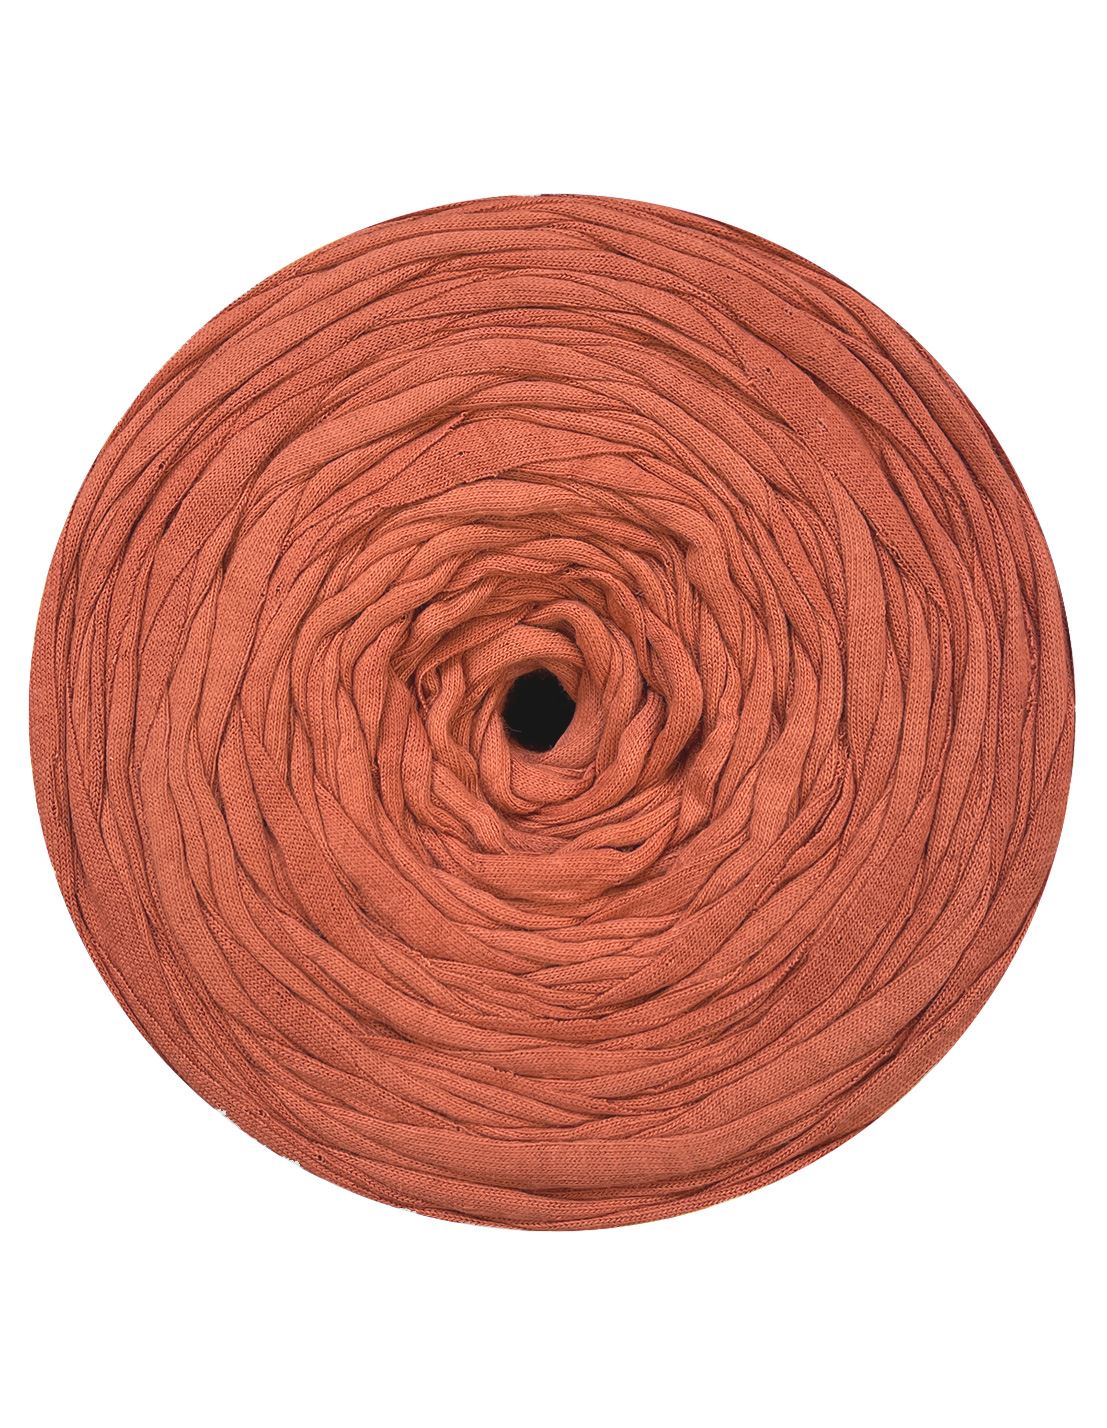 Clay brown t-shirt yarn by Rescue Yarn (100-120m)